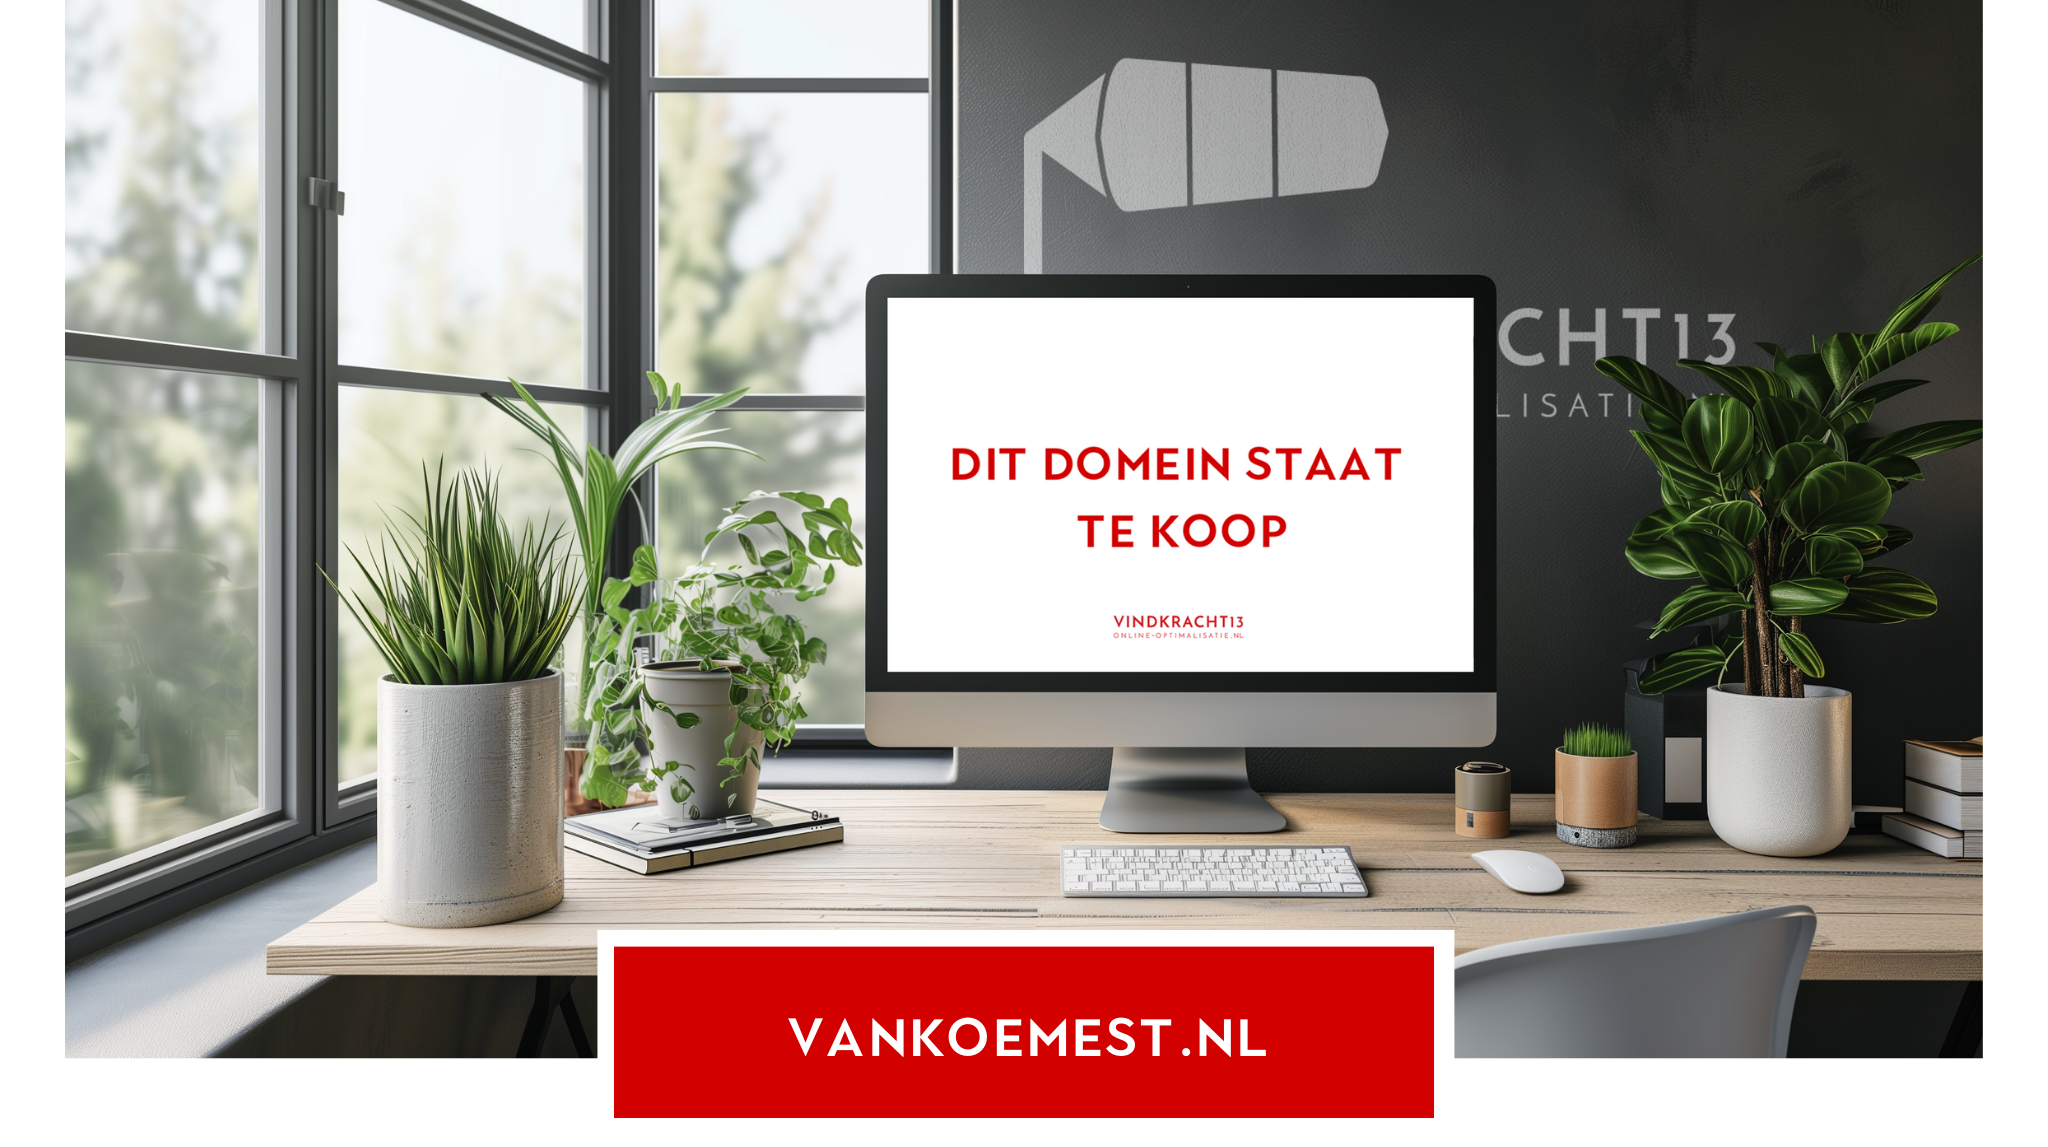 Domein VANKOEMEST.nl te koop